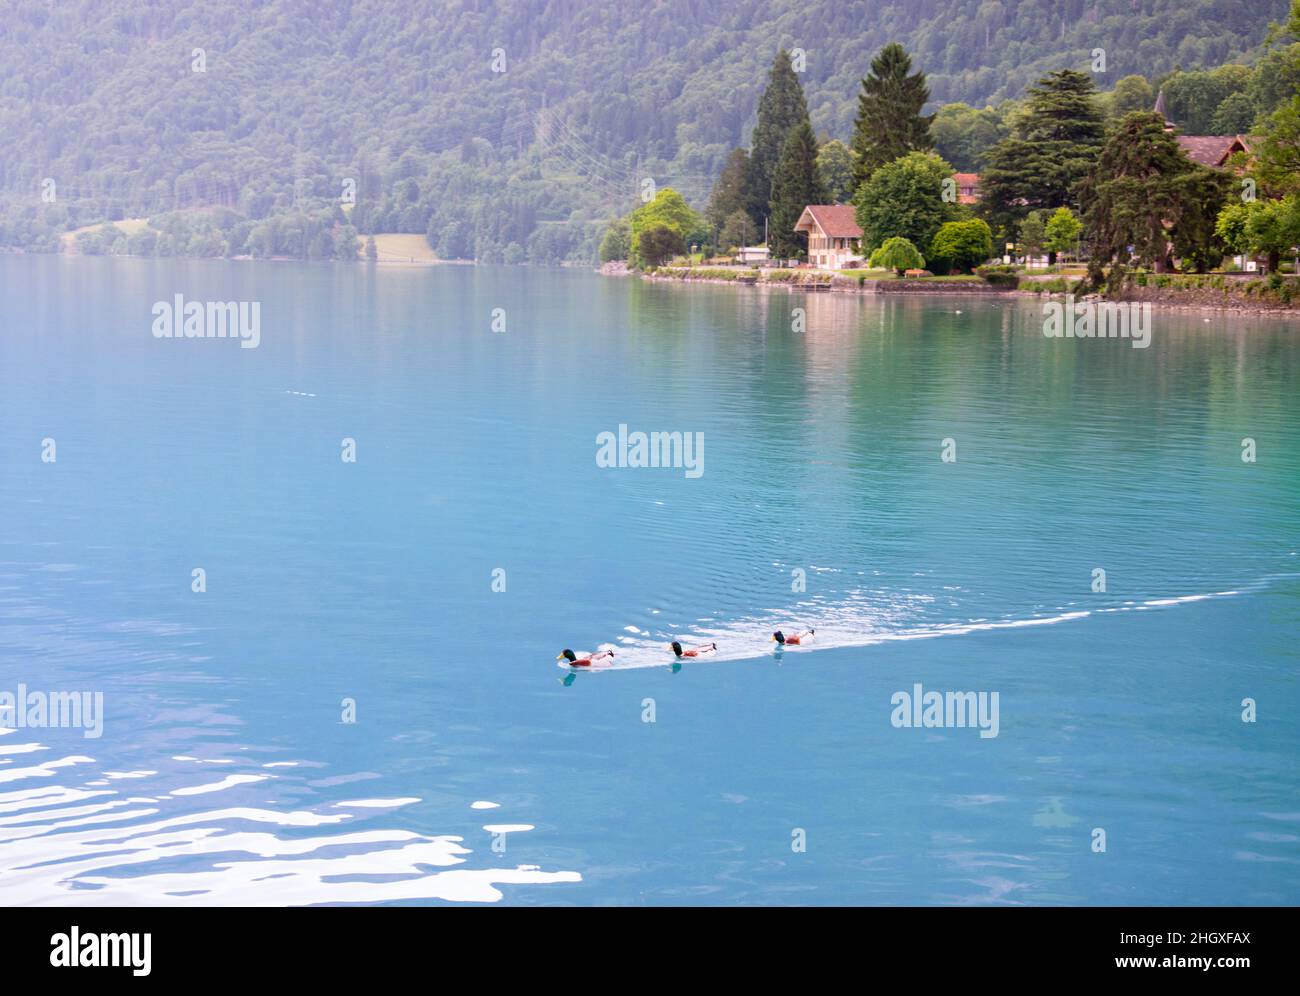 Gaggle di anatre stanno nuotando nel lago di Brienz a Interlaken, scenario idilliaco di acque turchesi, anatre e foreste. Foto Stock